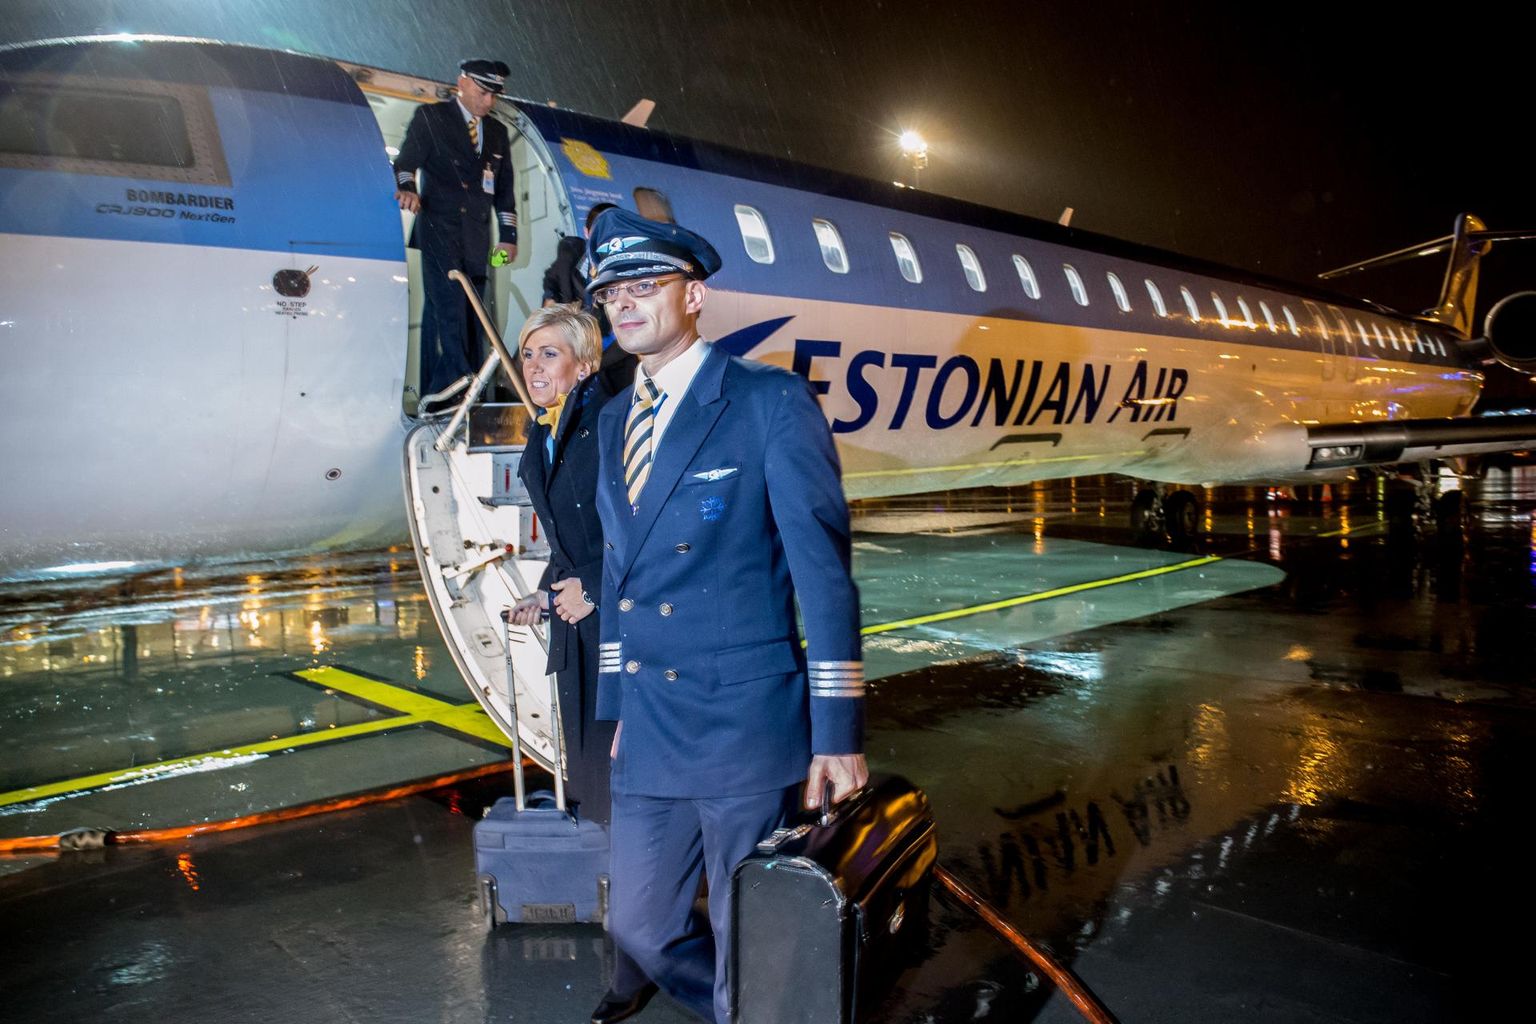 Последний полет Estonian Air 7 ноября 2015 года.